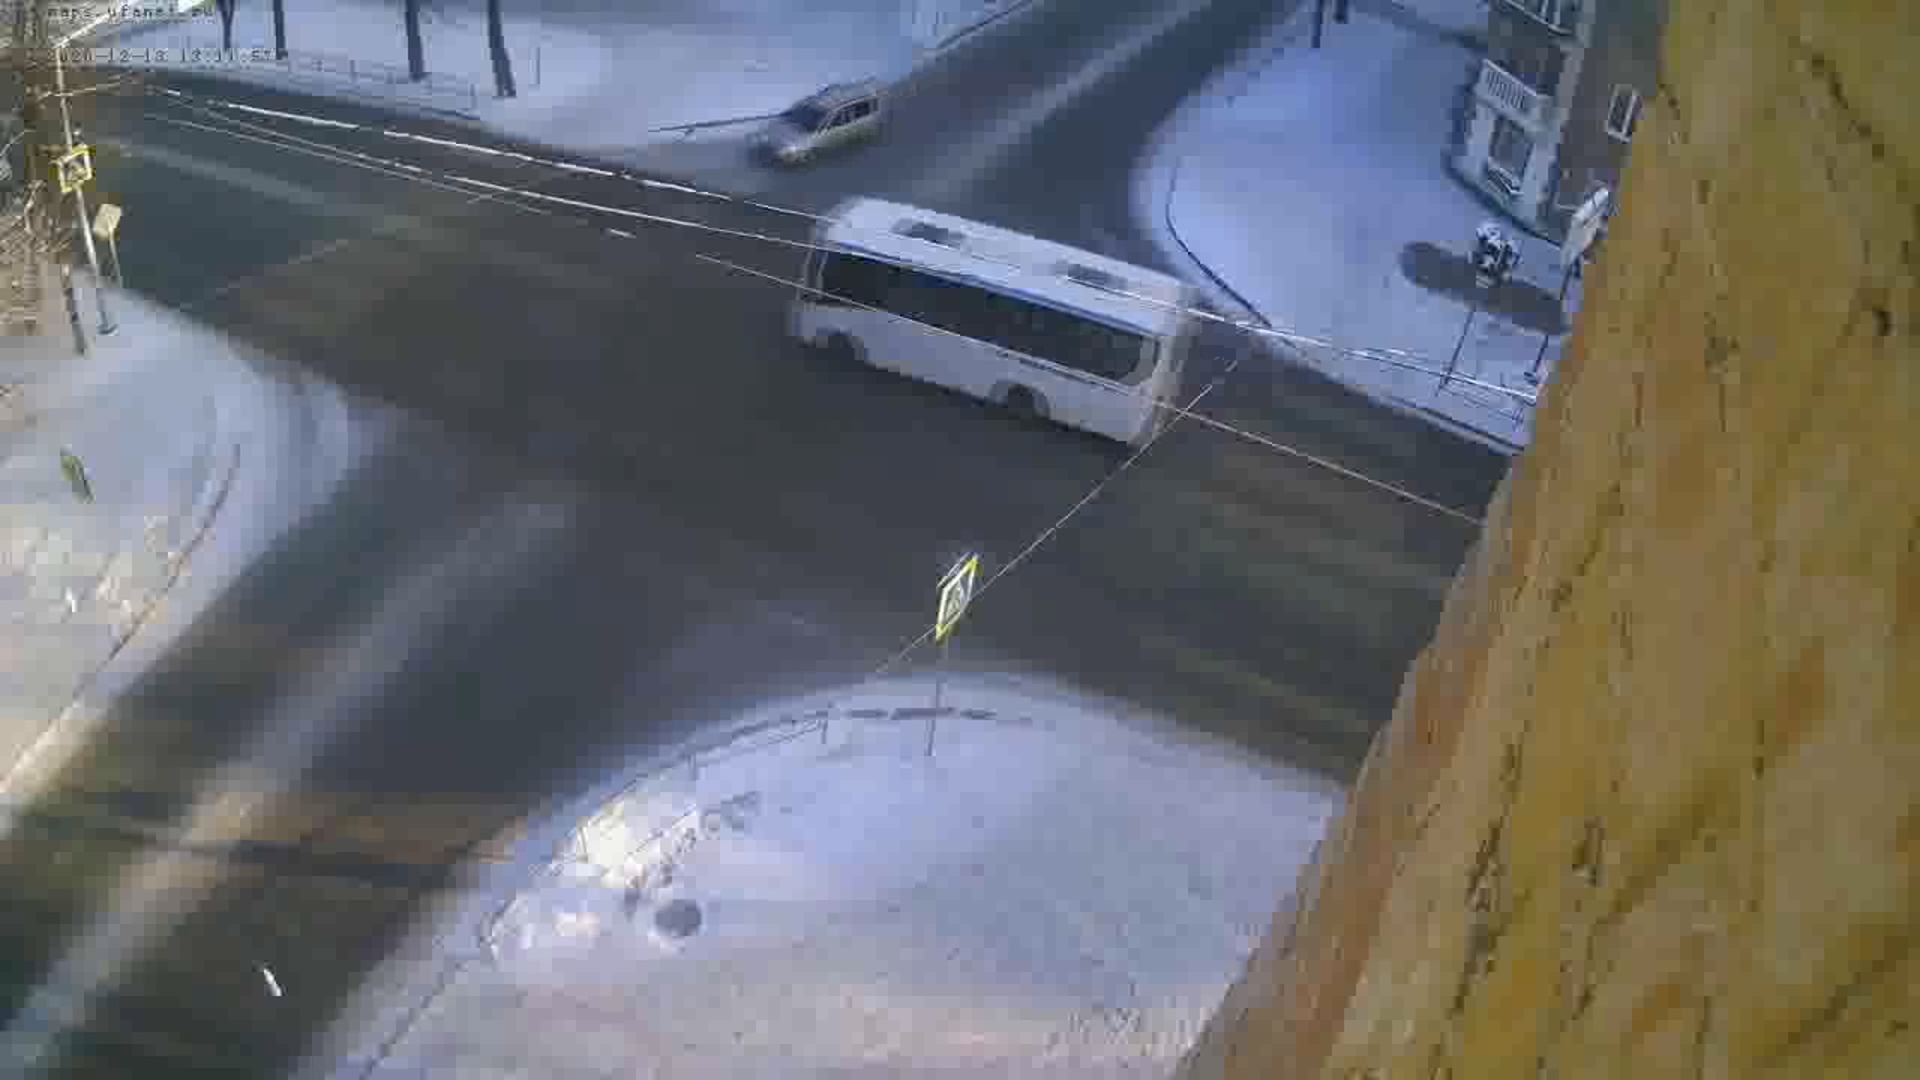 ВИДЕО: В Уфе автобус выехал на «красный» и протаранил легковой автомобиль